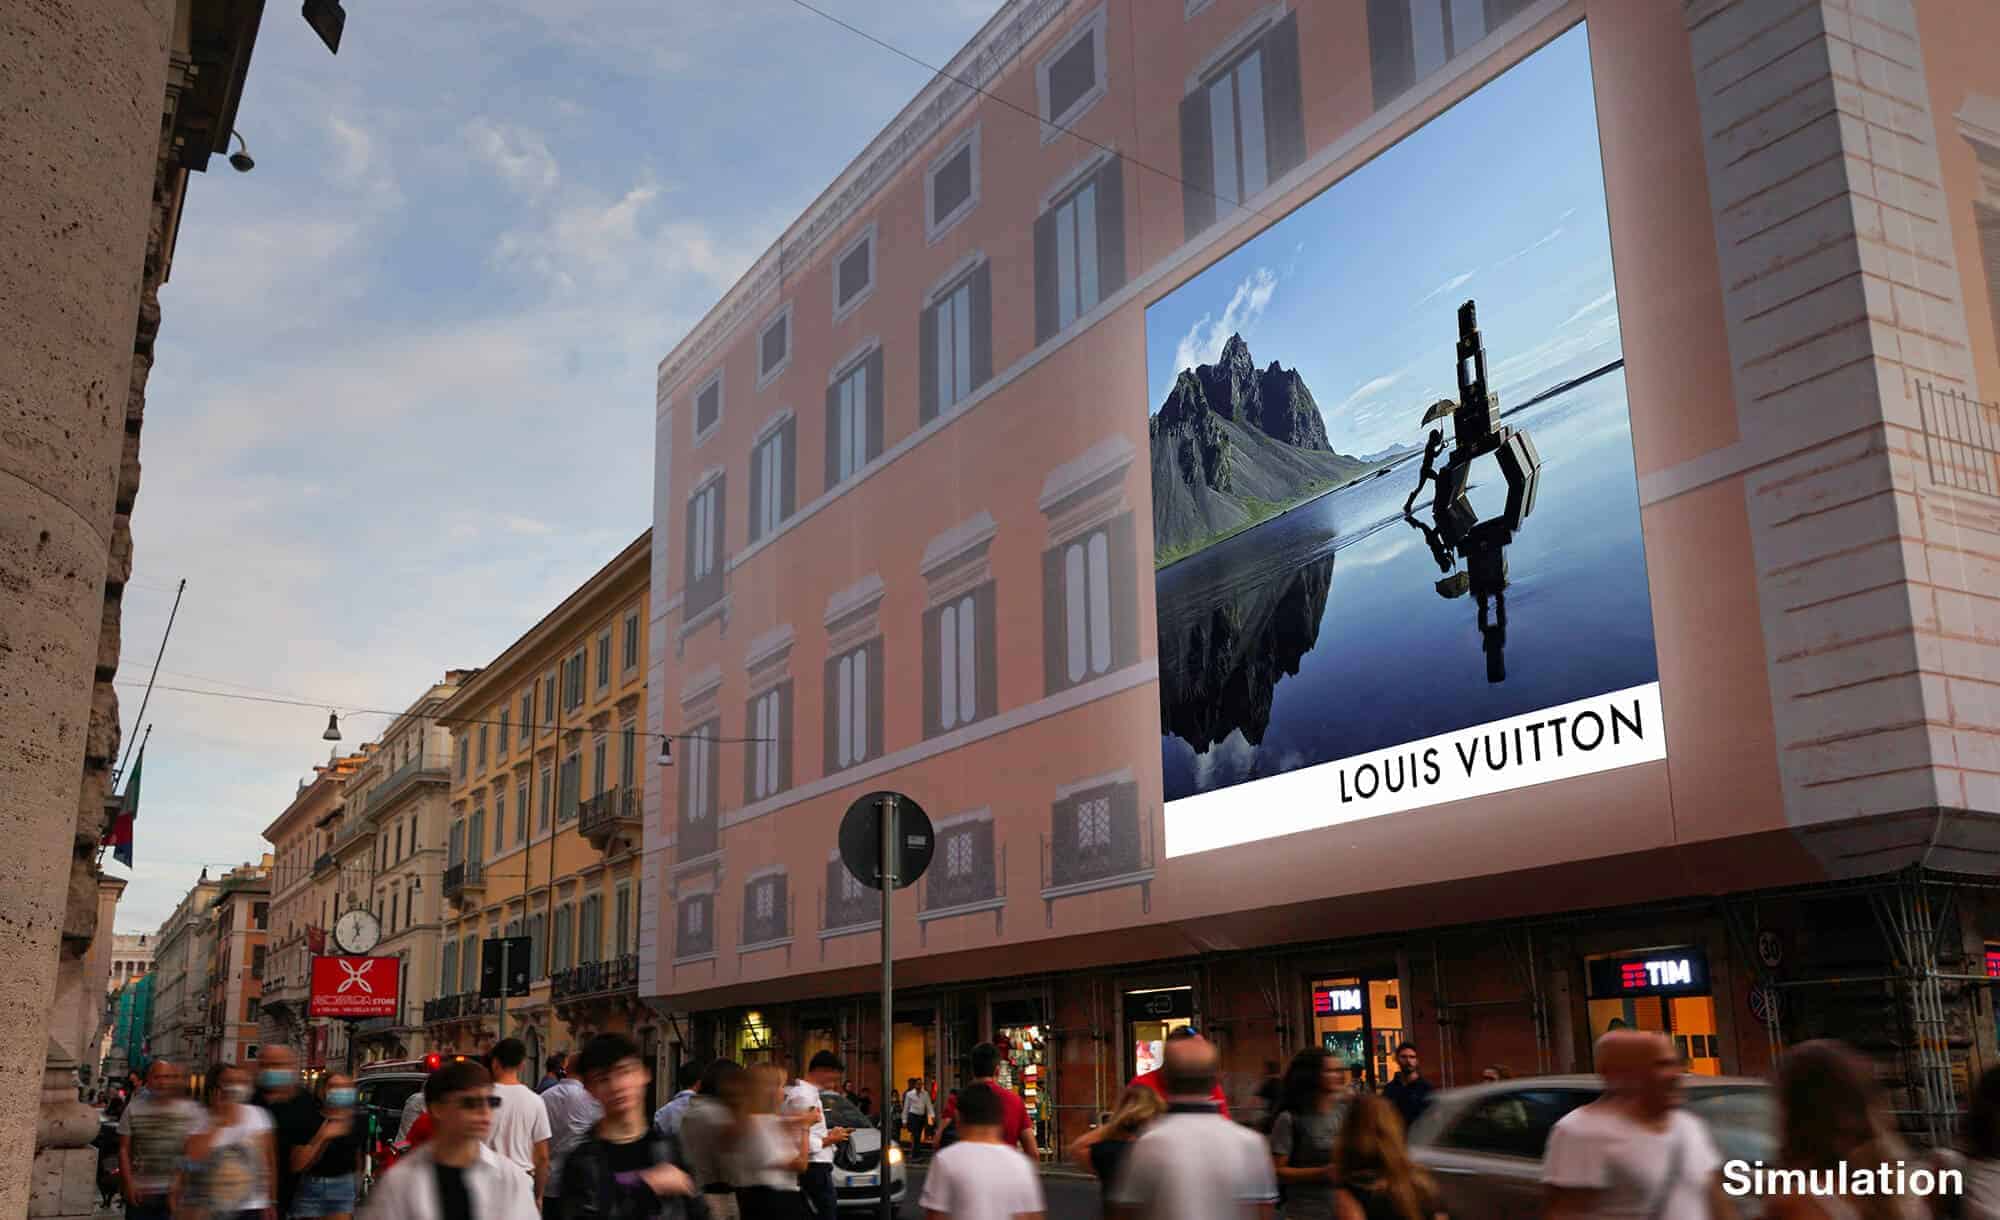 Maxi Affissione a Roma in Piazza Colonna con Louis Vuitton (Fashion)